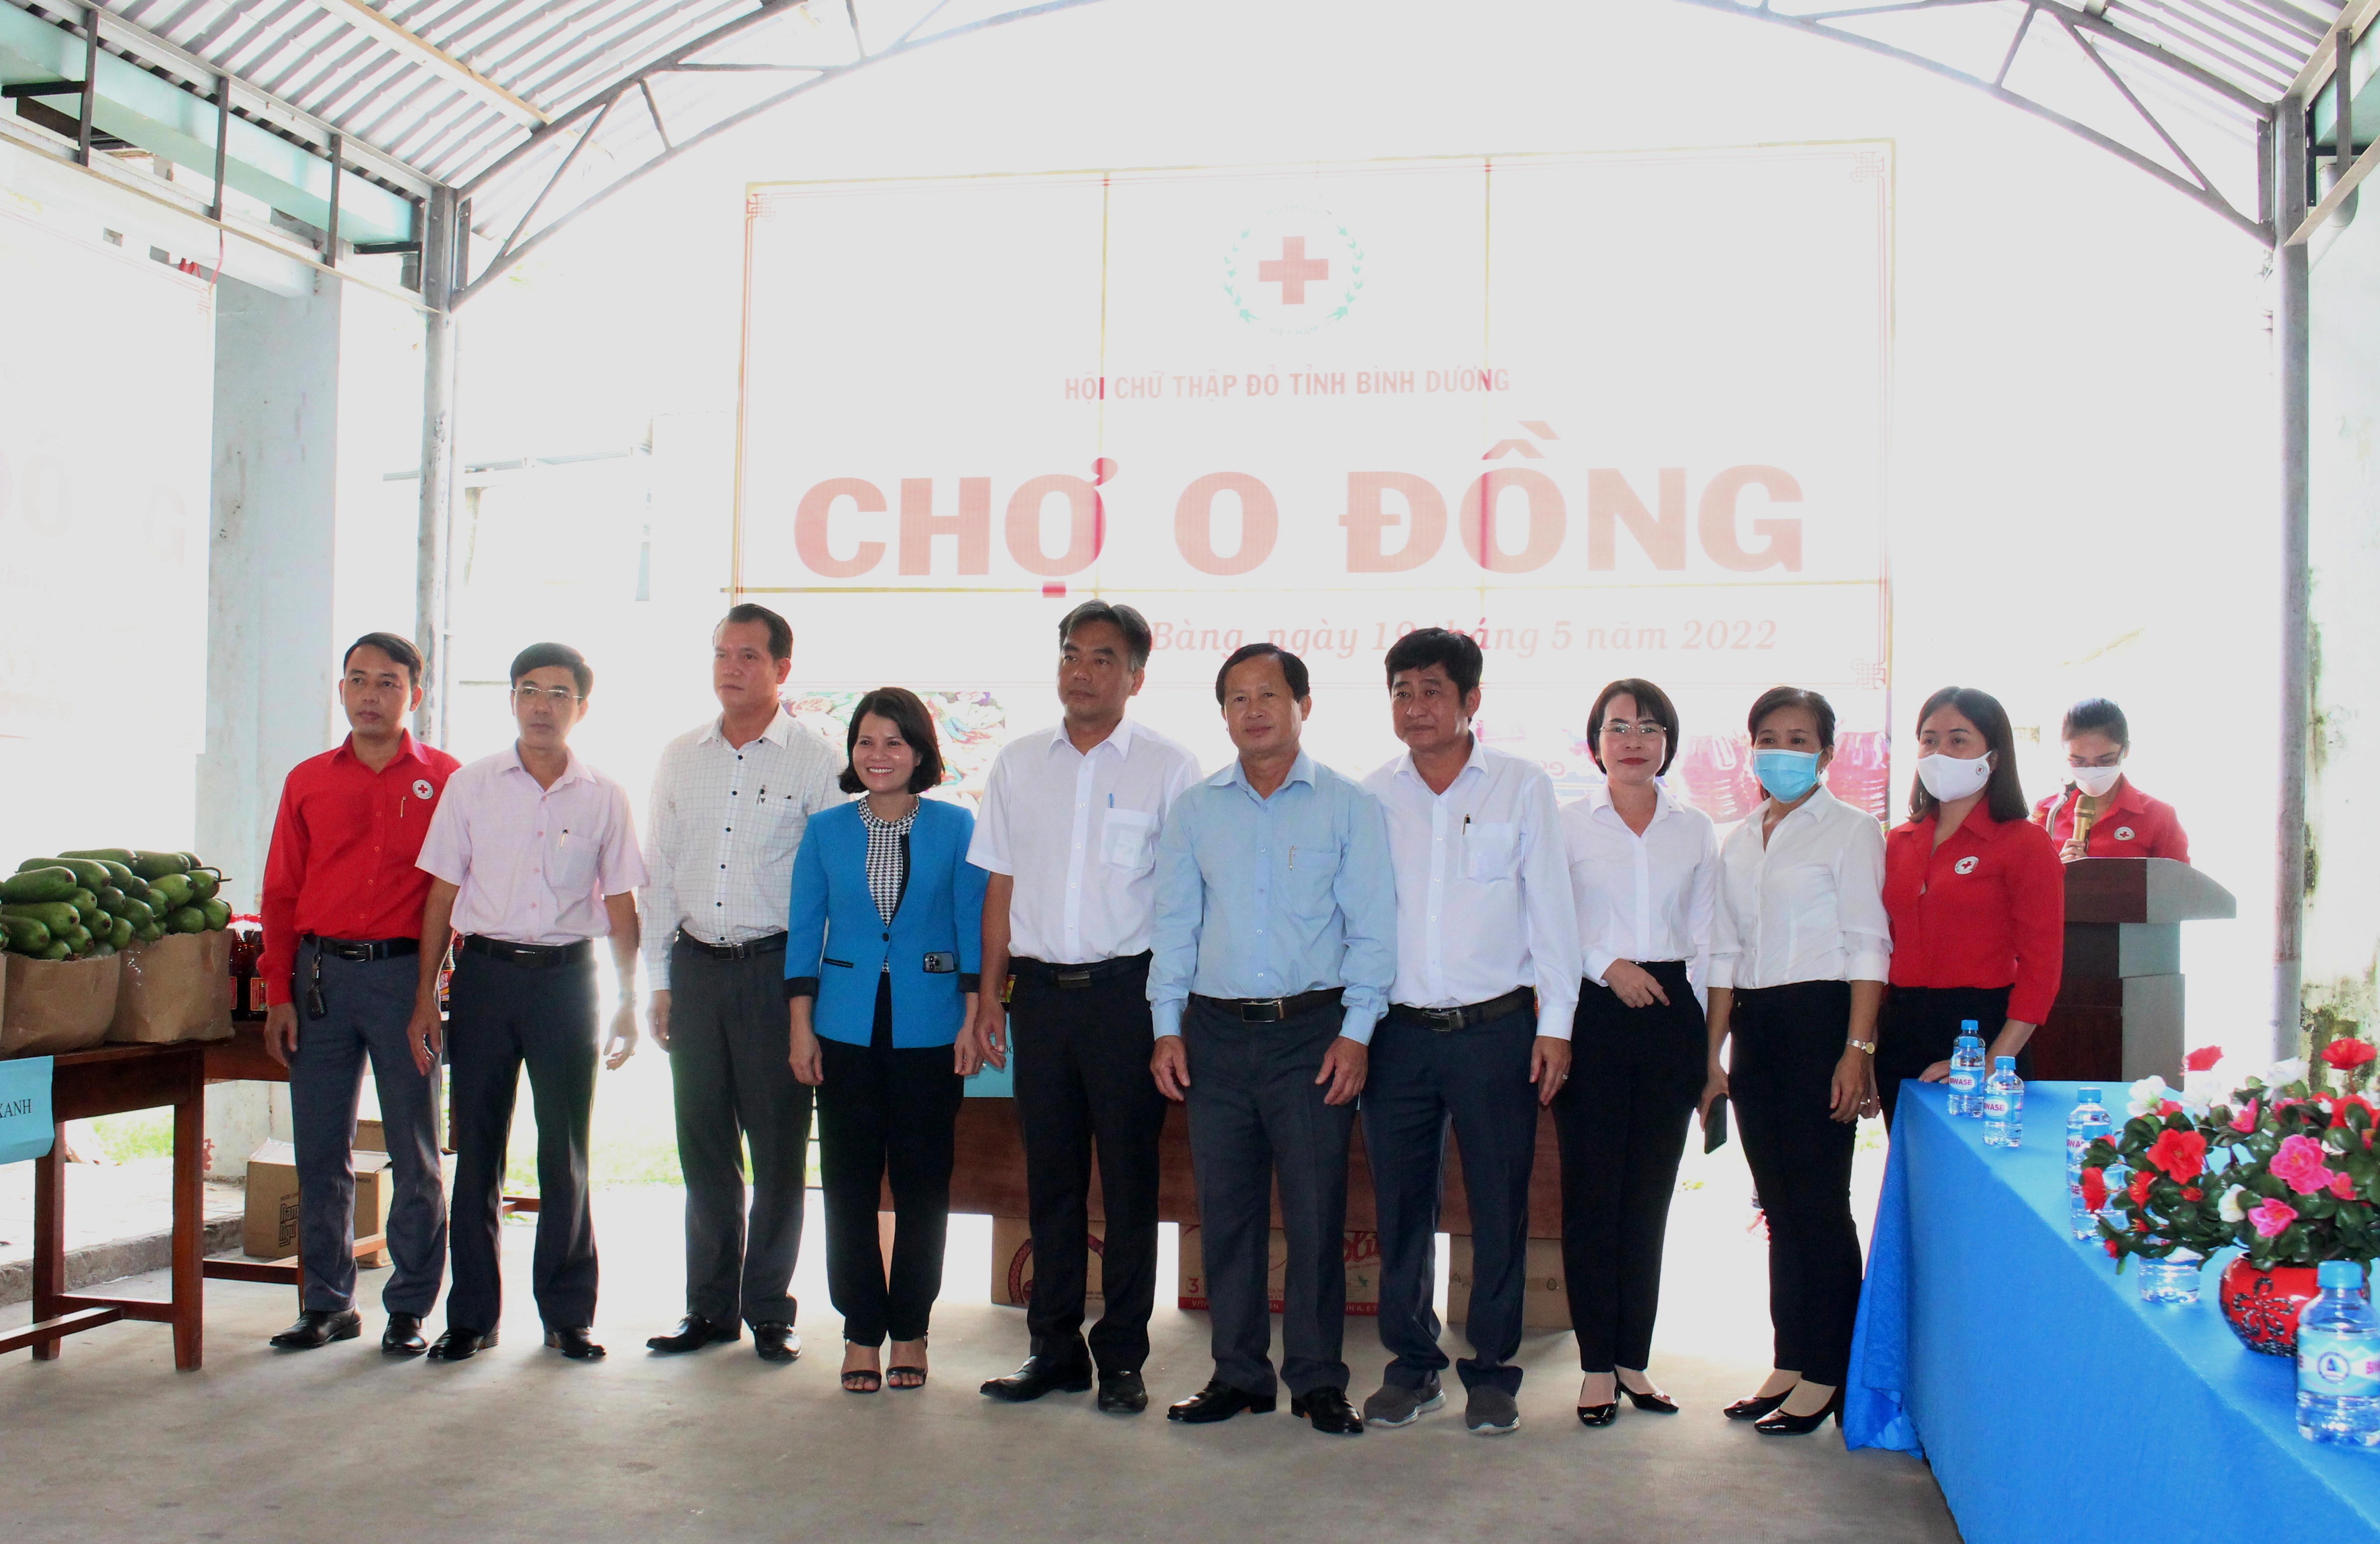 Lãnh đạo tỉnh, huyện chụp hình lưu niệm tại chương trình chợ 0 đồng được tổ chức tại xã Trừ Văn Thố.